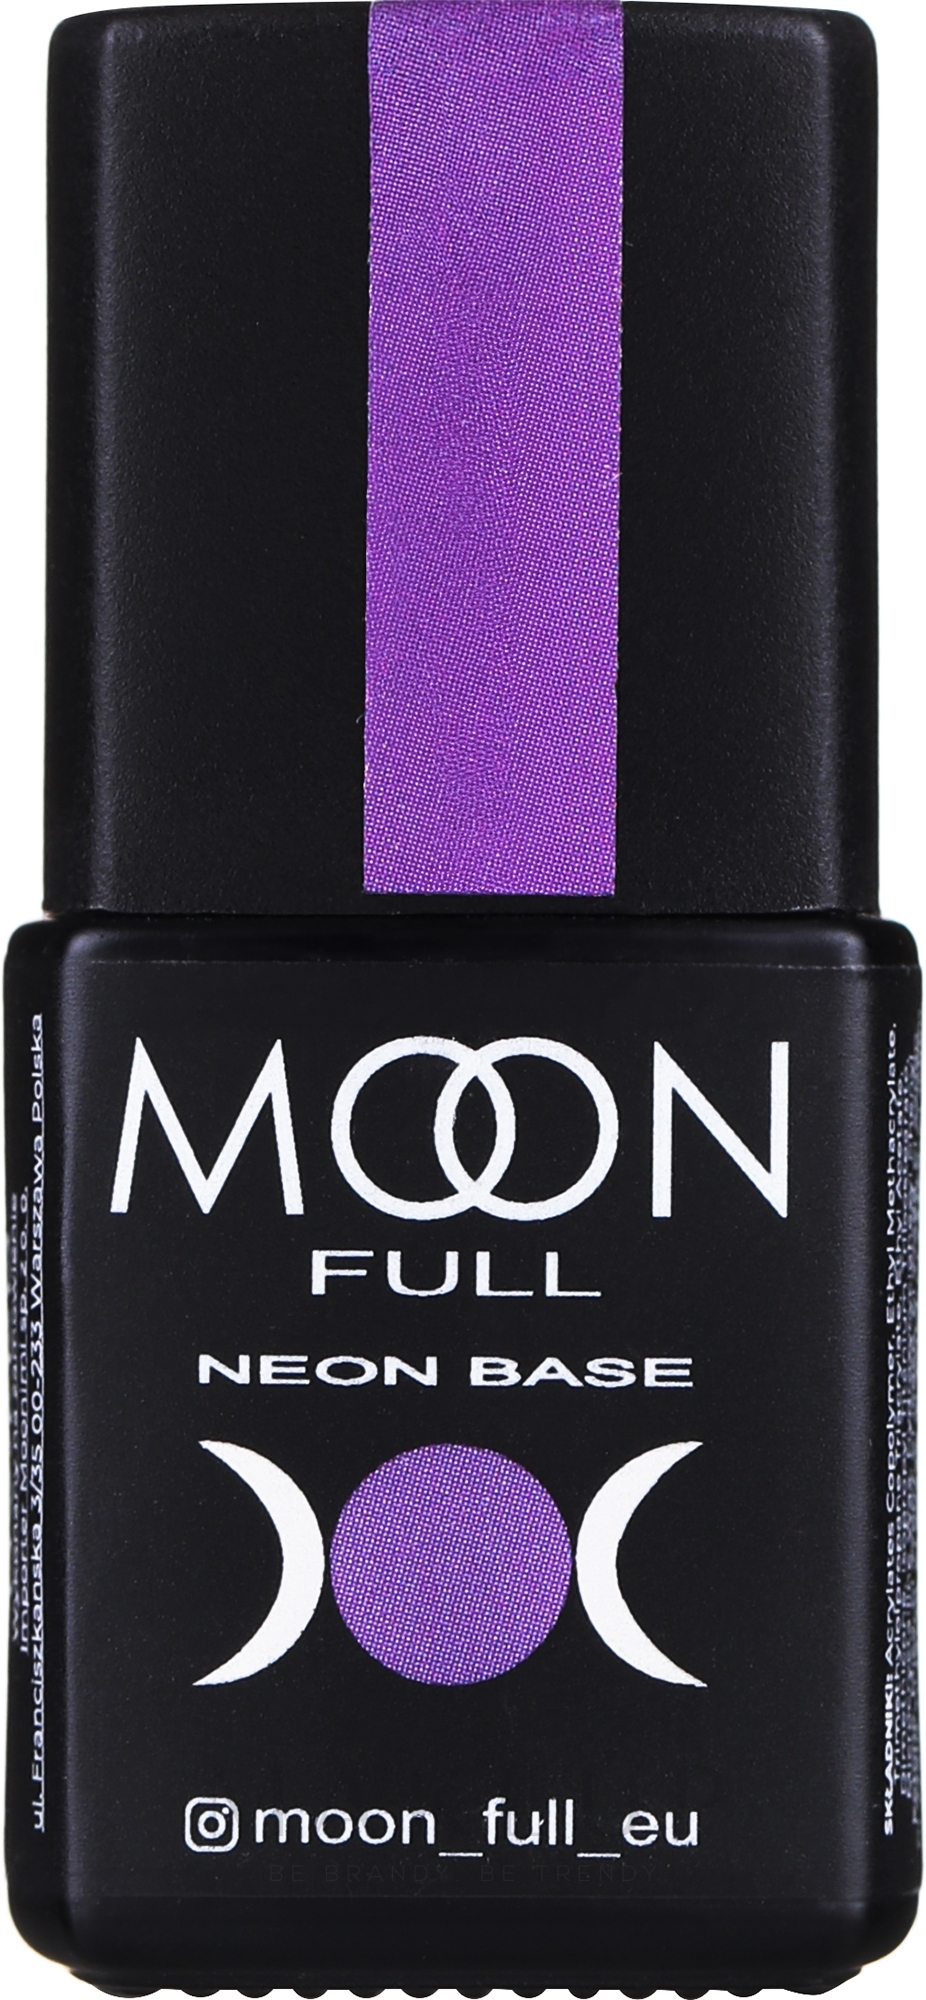 Neon-Nagelbasis - Moon Full Neon Base — Bild 05